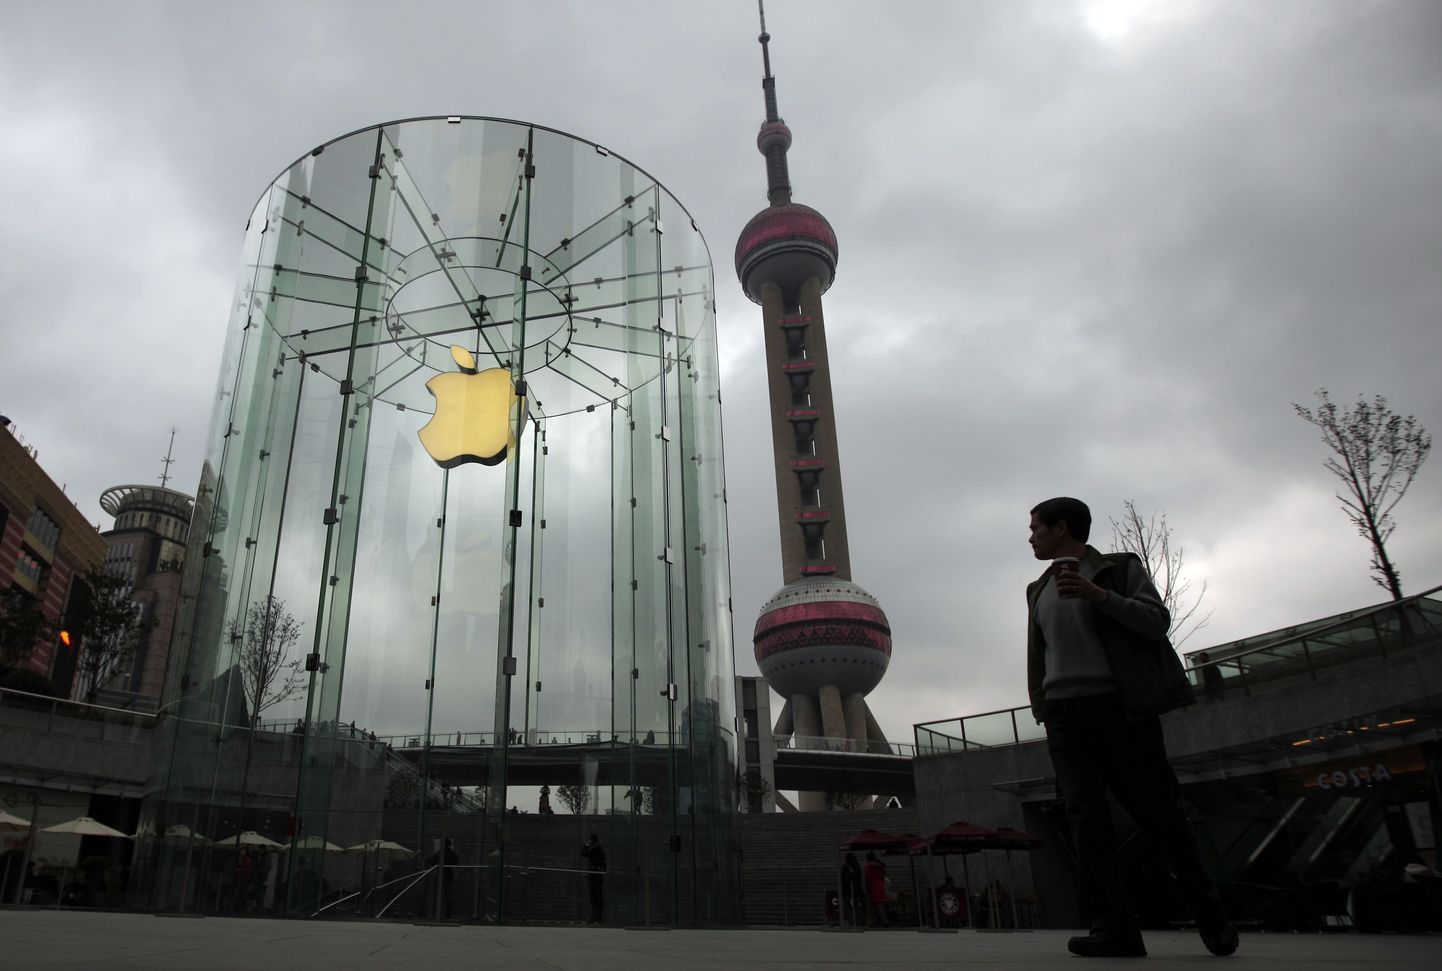 Apple esinduspood Shangais